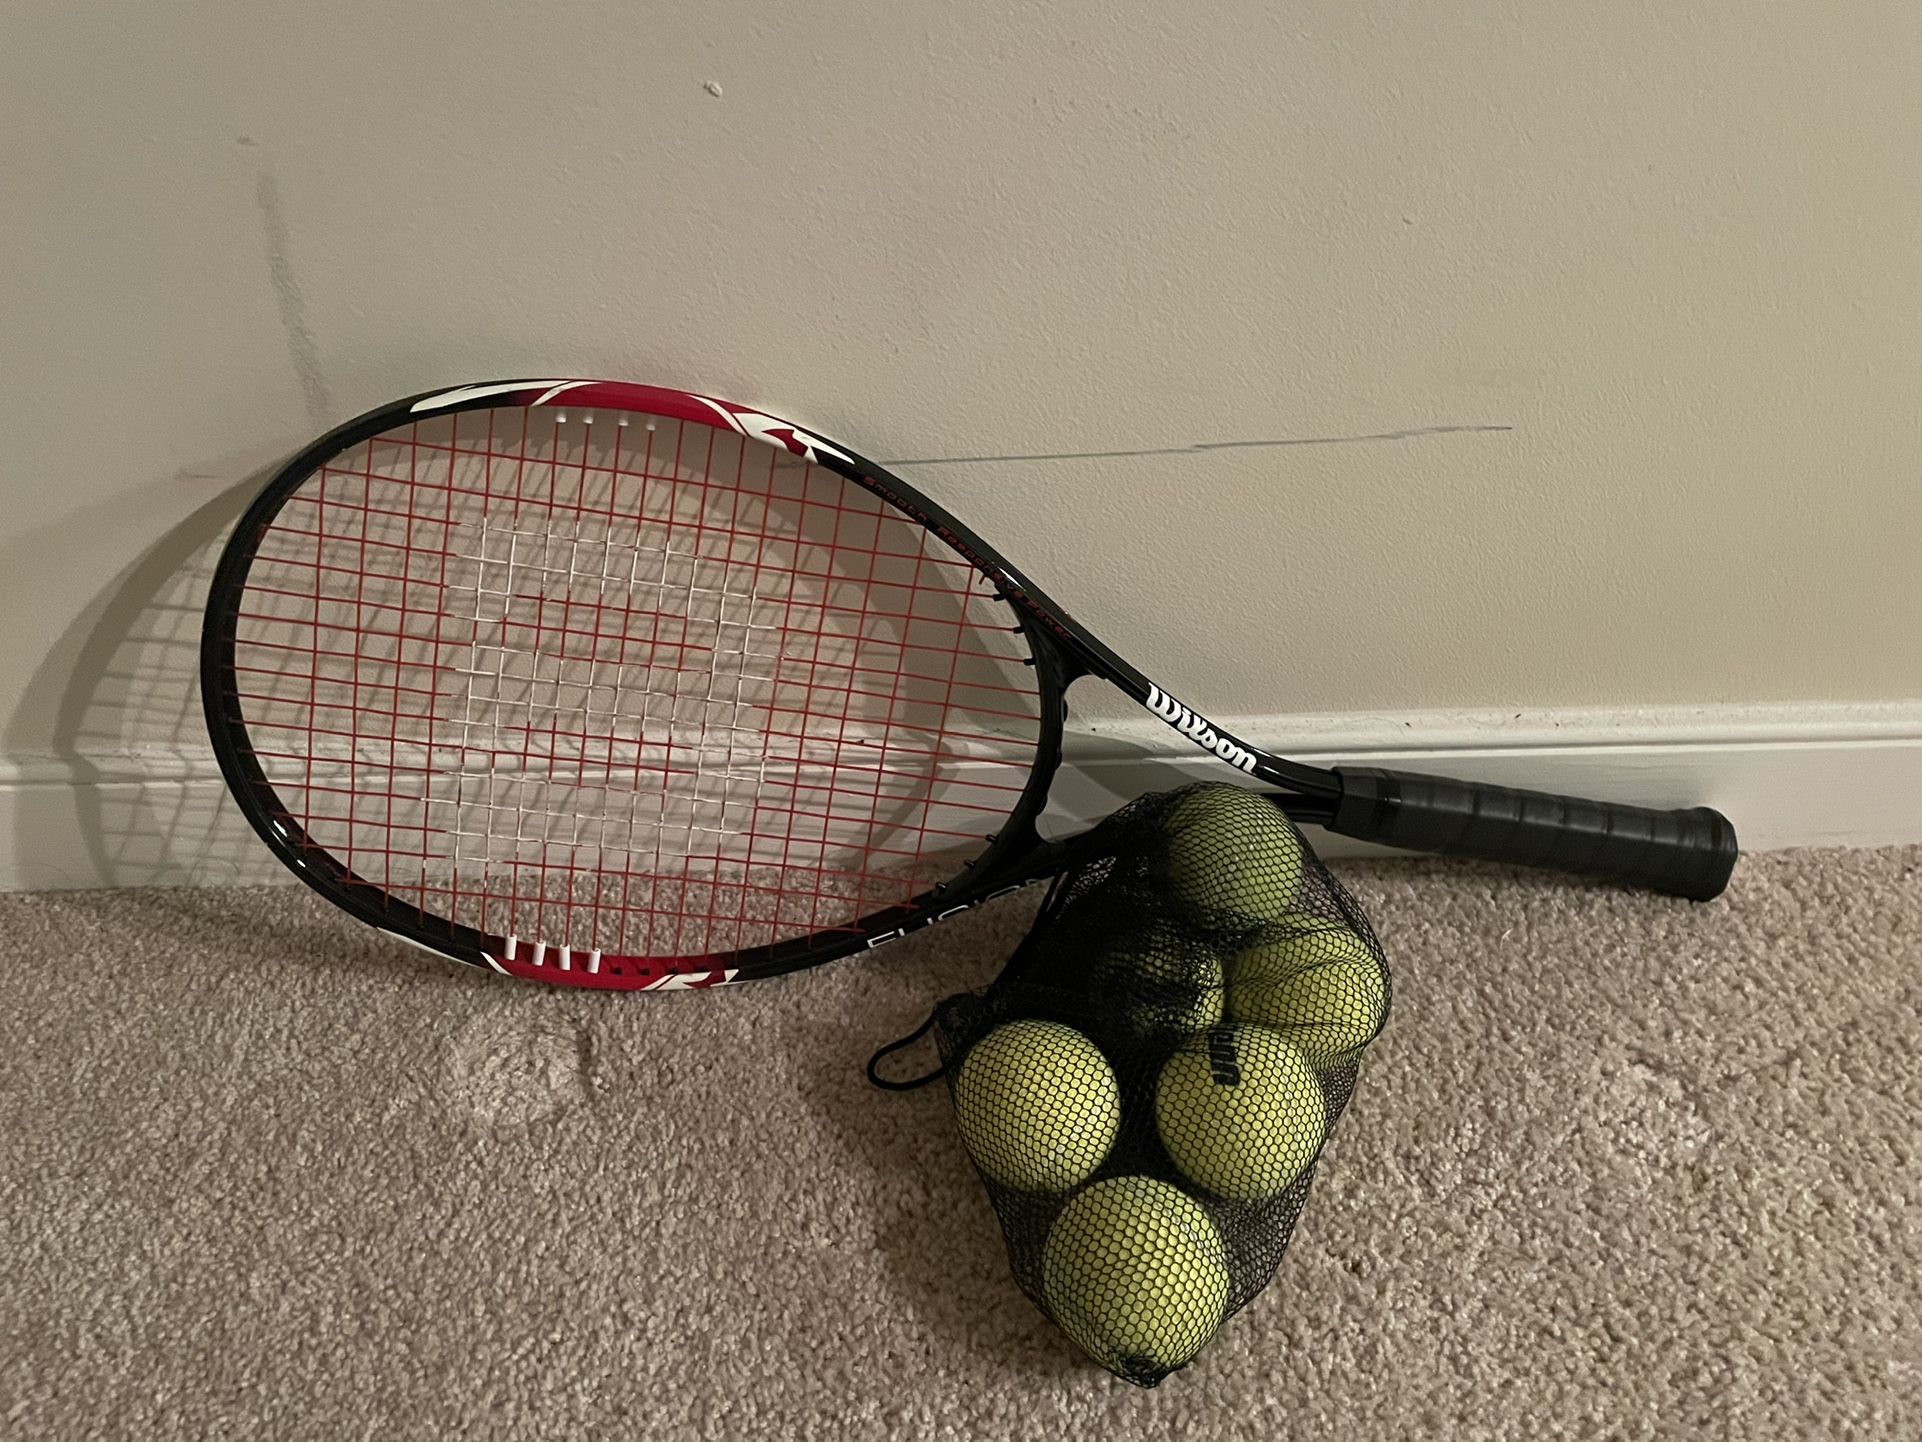 Tennis racquet & 6 tennis balls